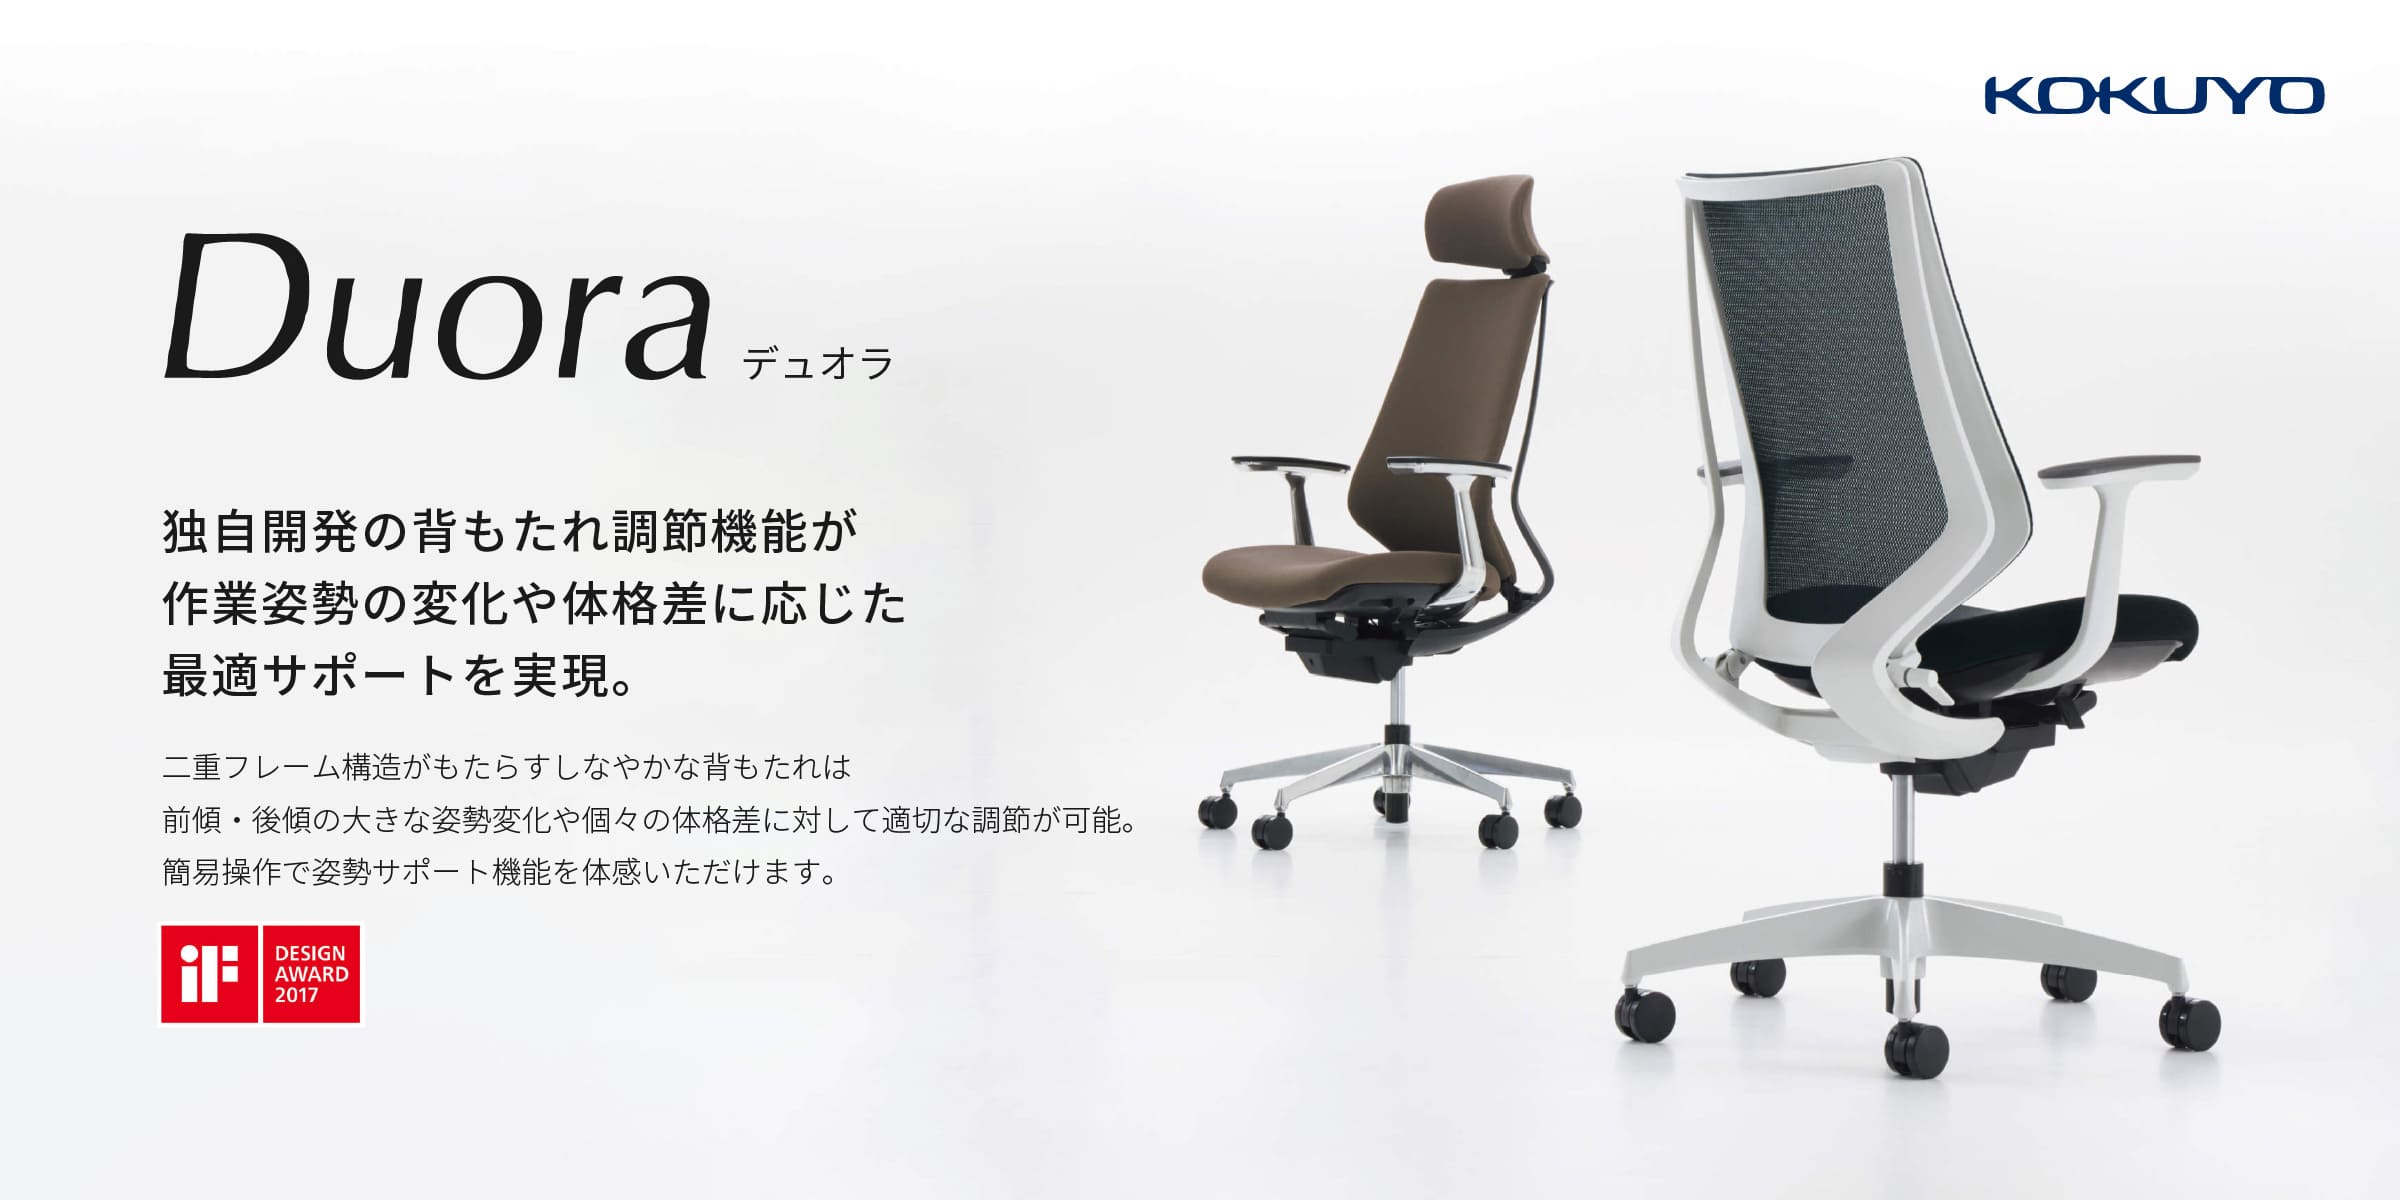 ☆人気No.1☆ コクヨ Duora(デュオラ)|オフィス家具やオフィス用品なら